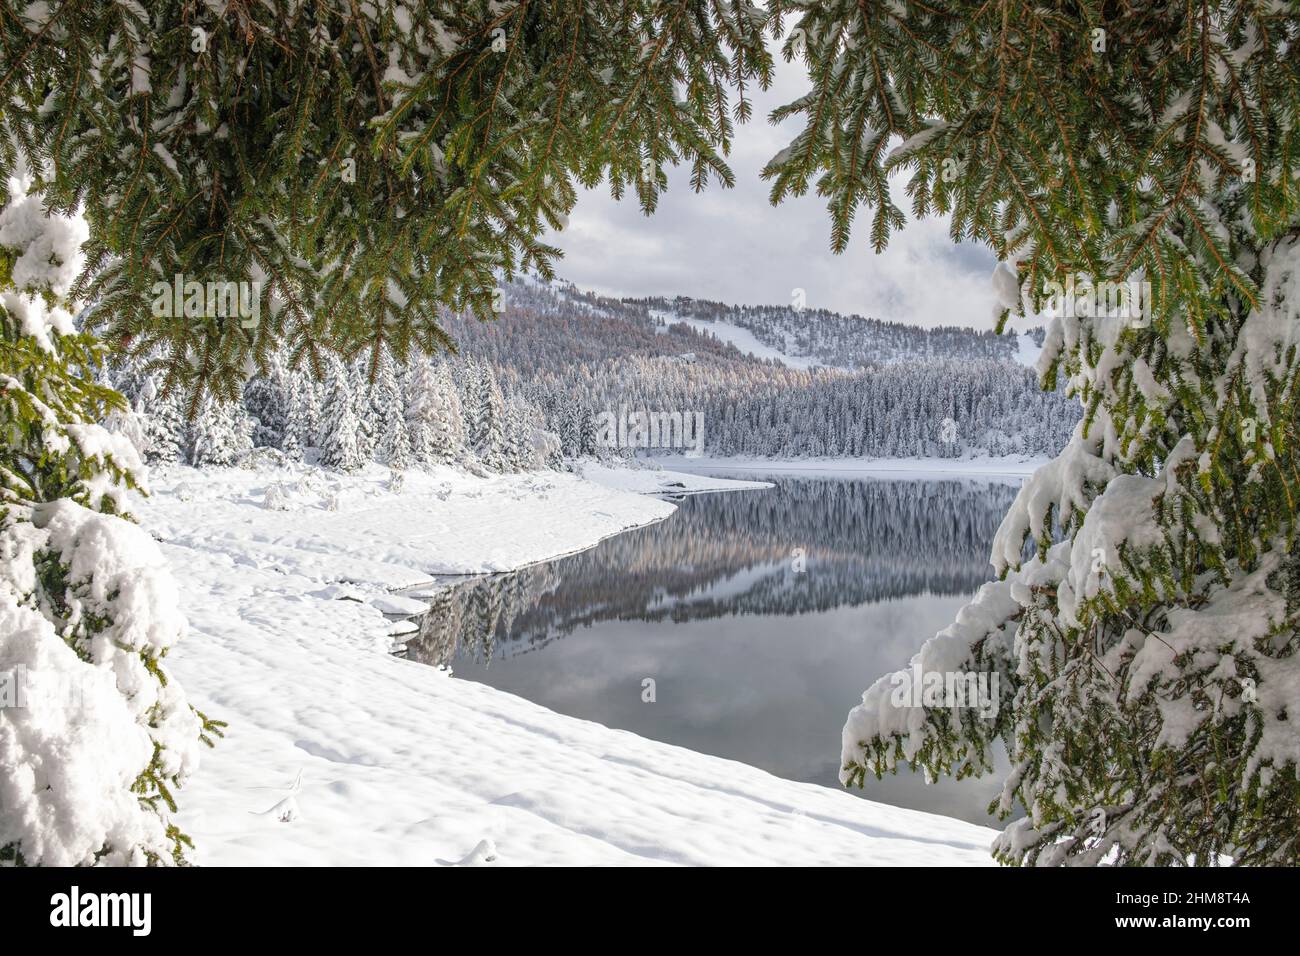 Lago Palù avvolto da una copiosa nevicata, Valmalenco, Lombardia, Italia Stock Photo